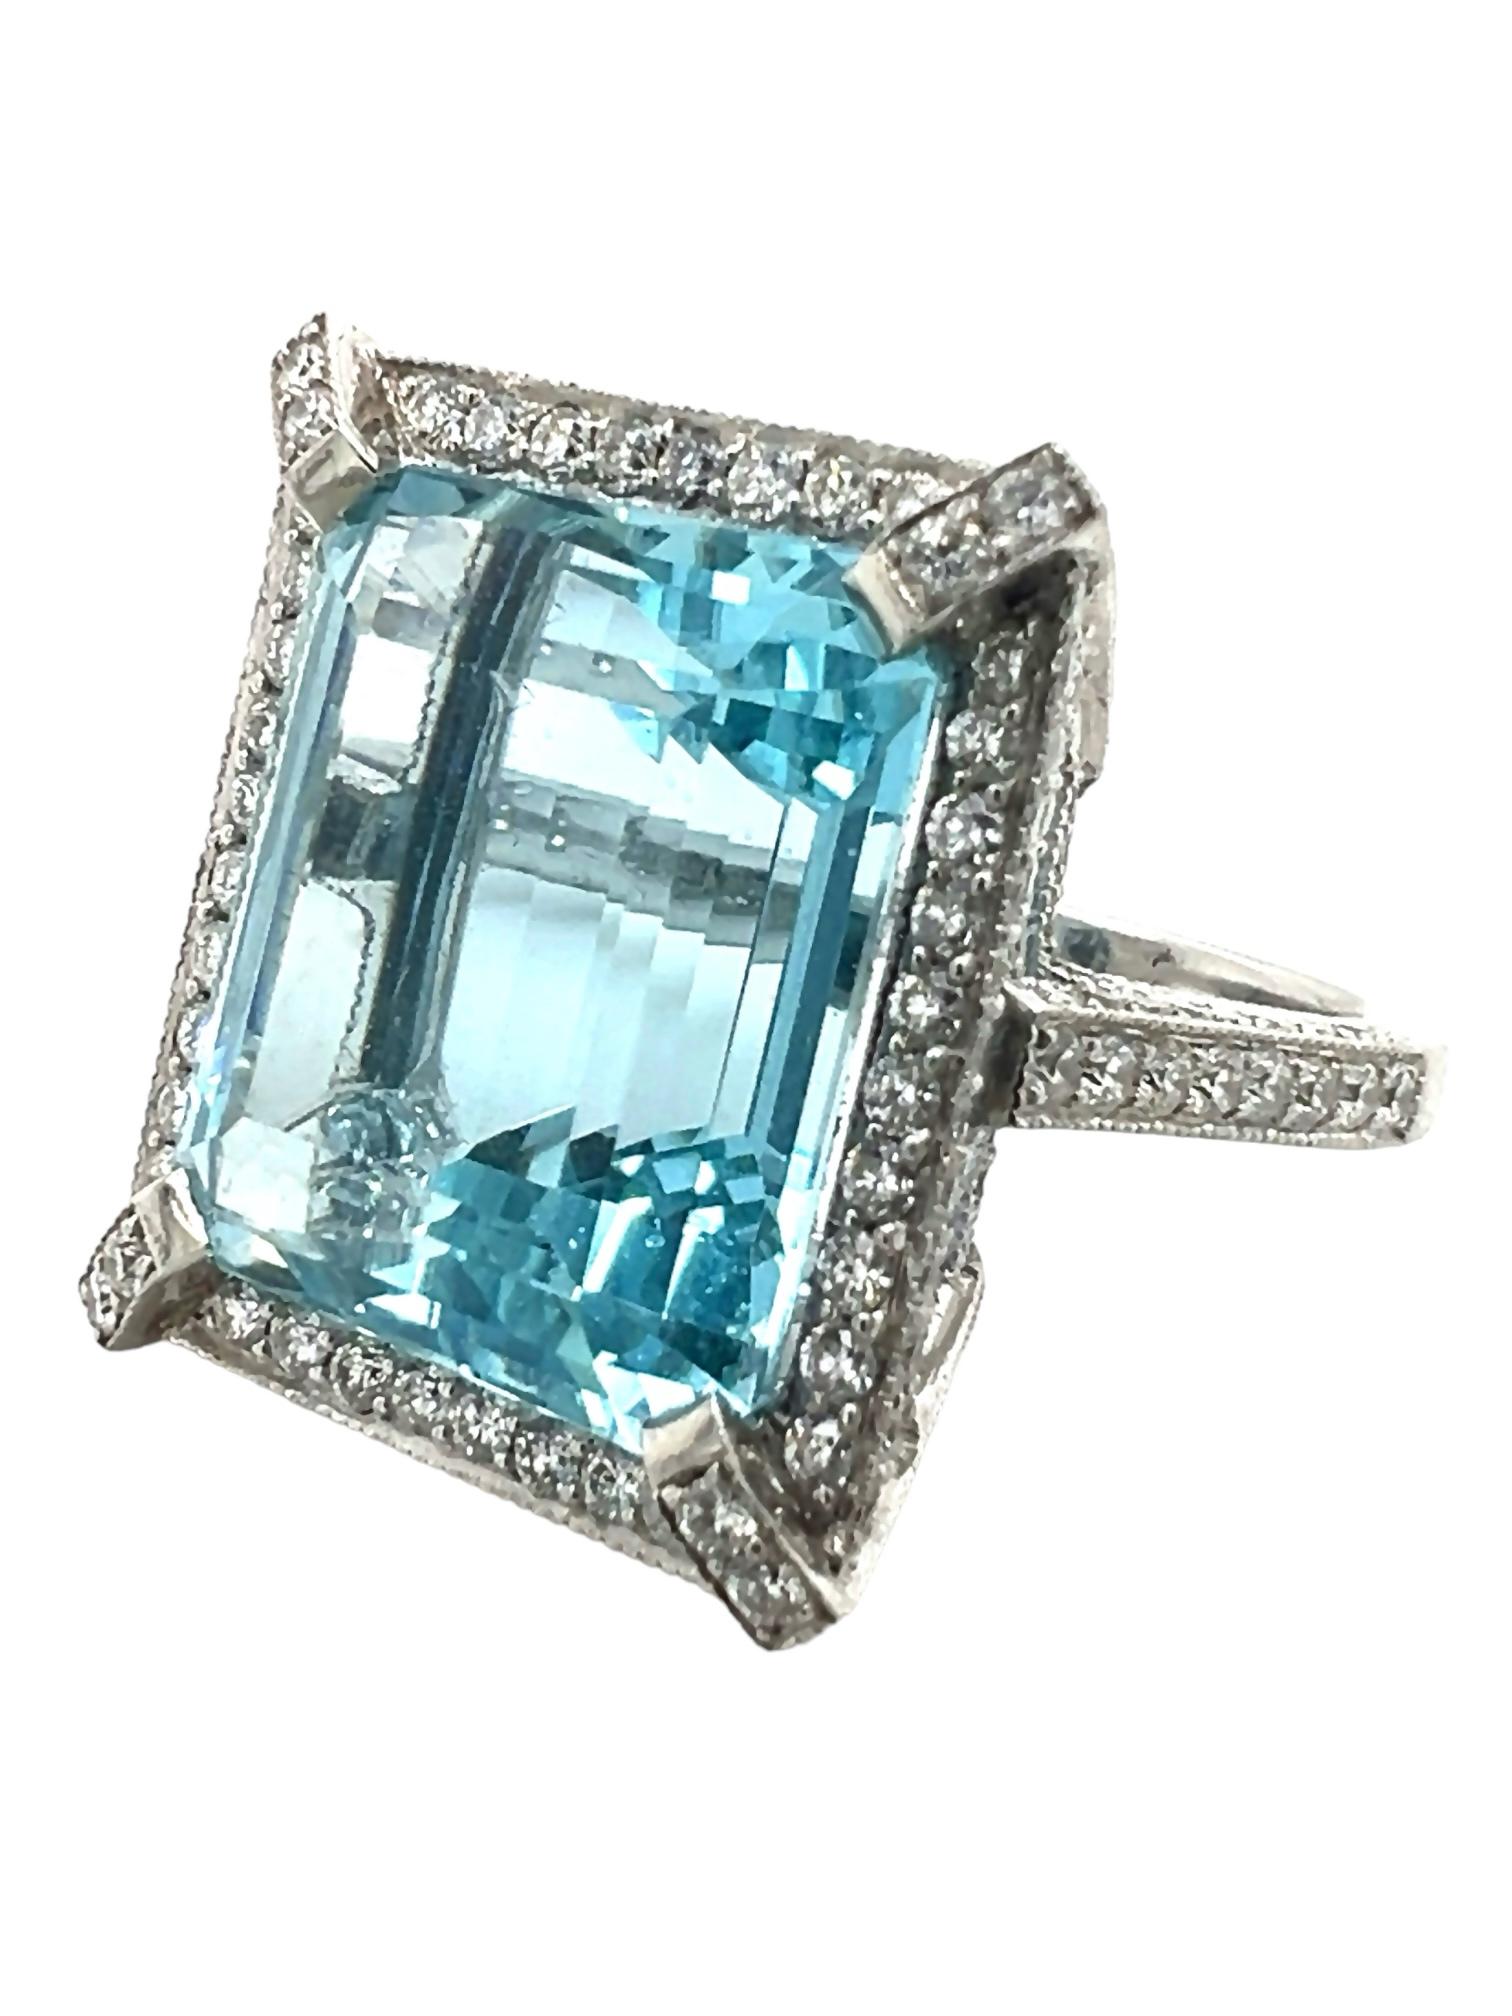 Emerald Cut Sophia D. 20.54 Carat Aquamarine Ring For Sale